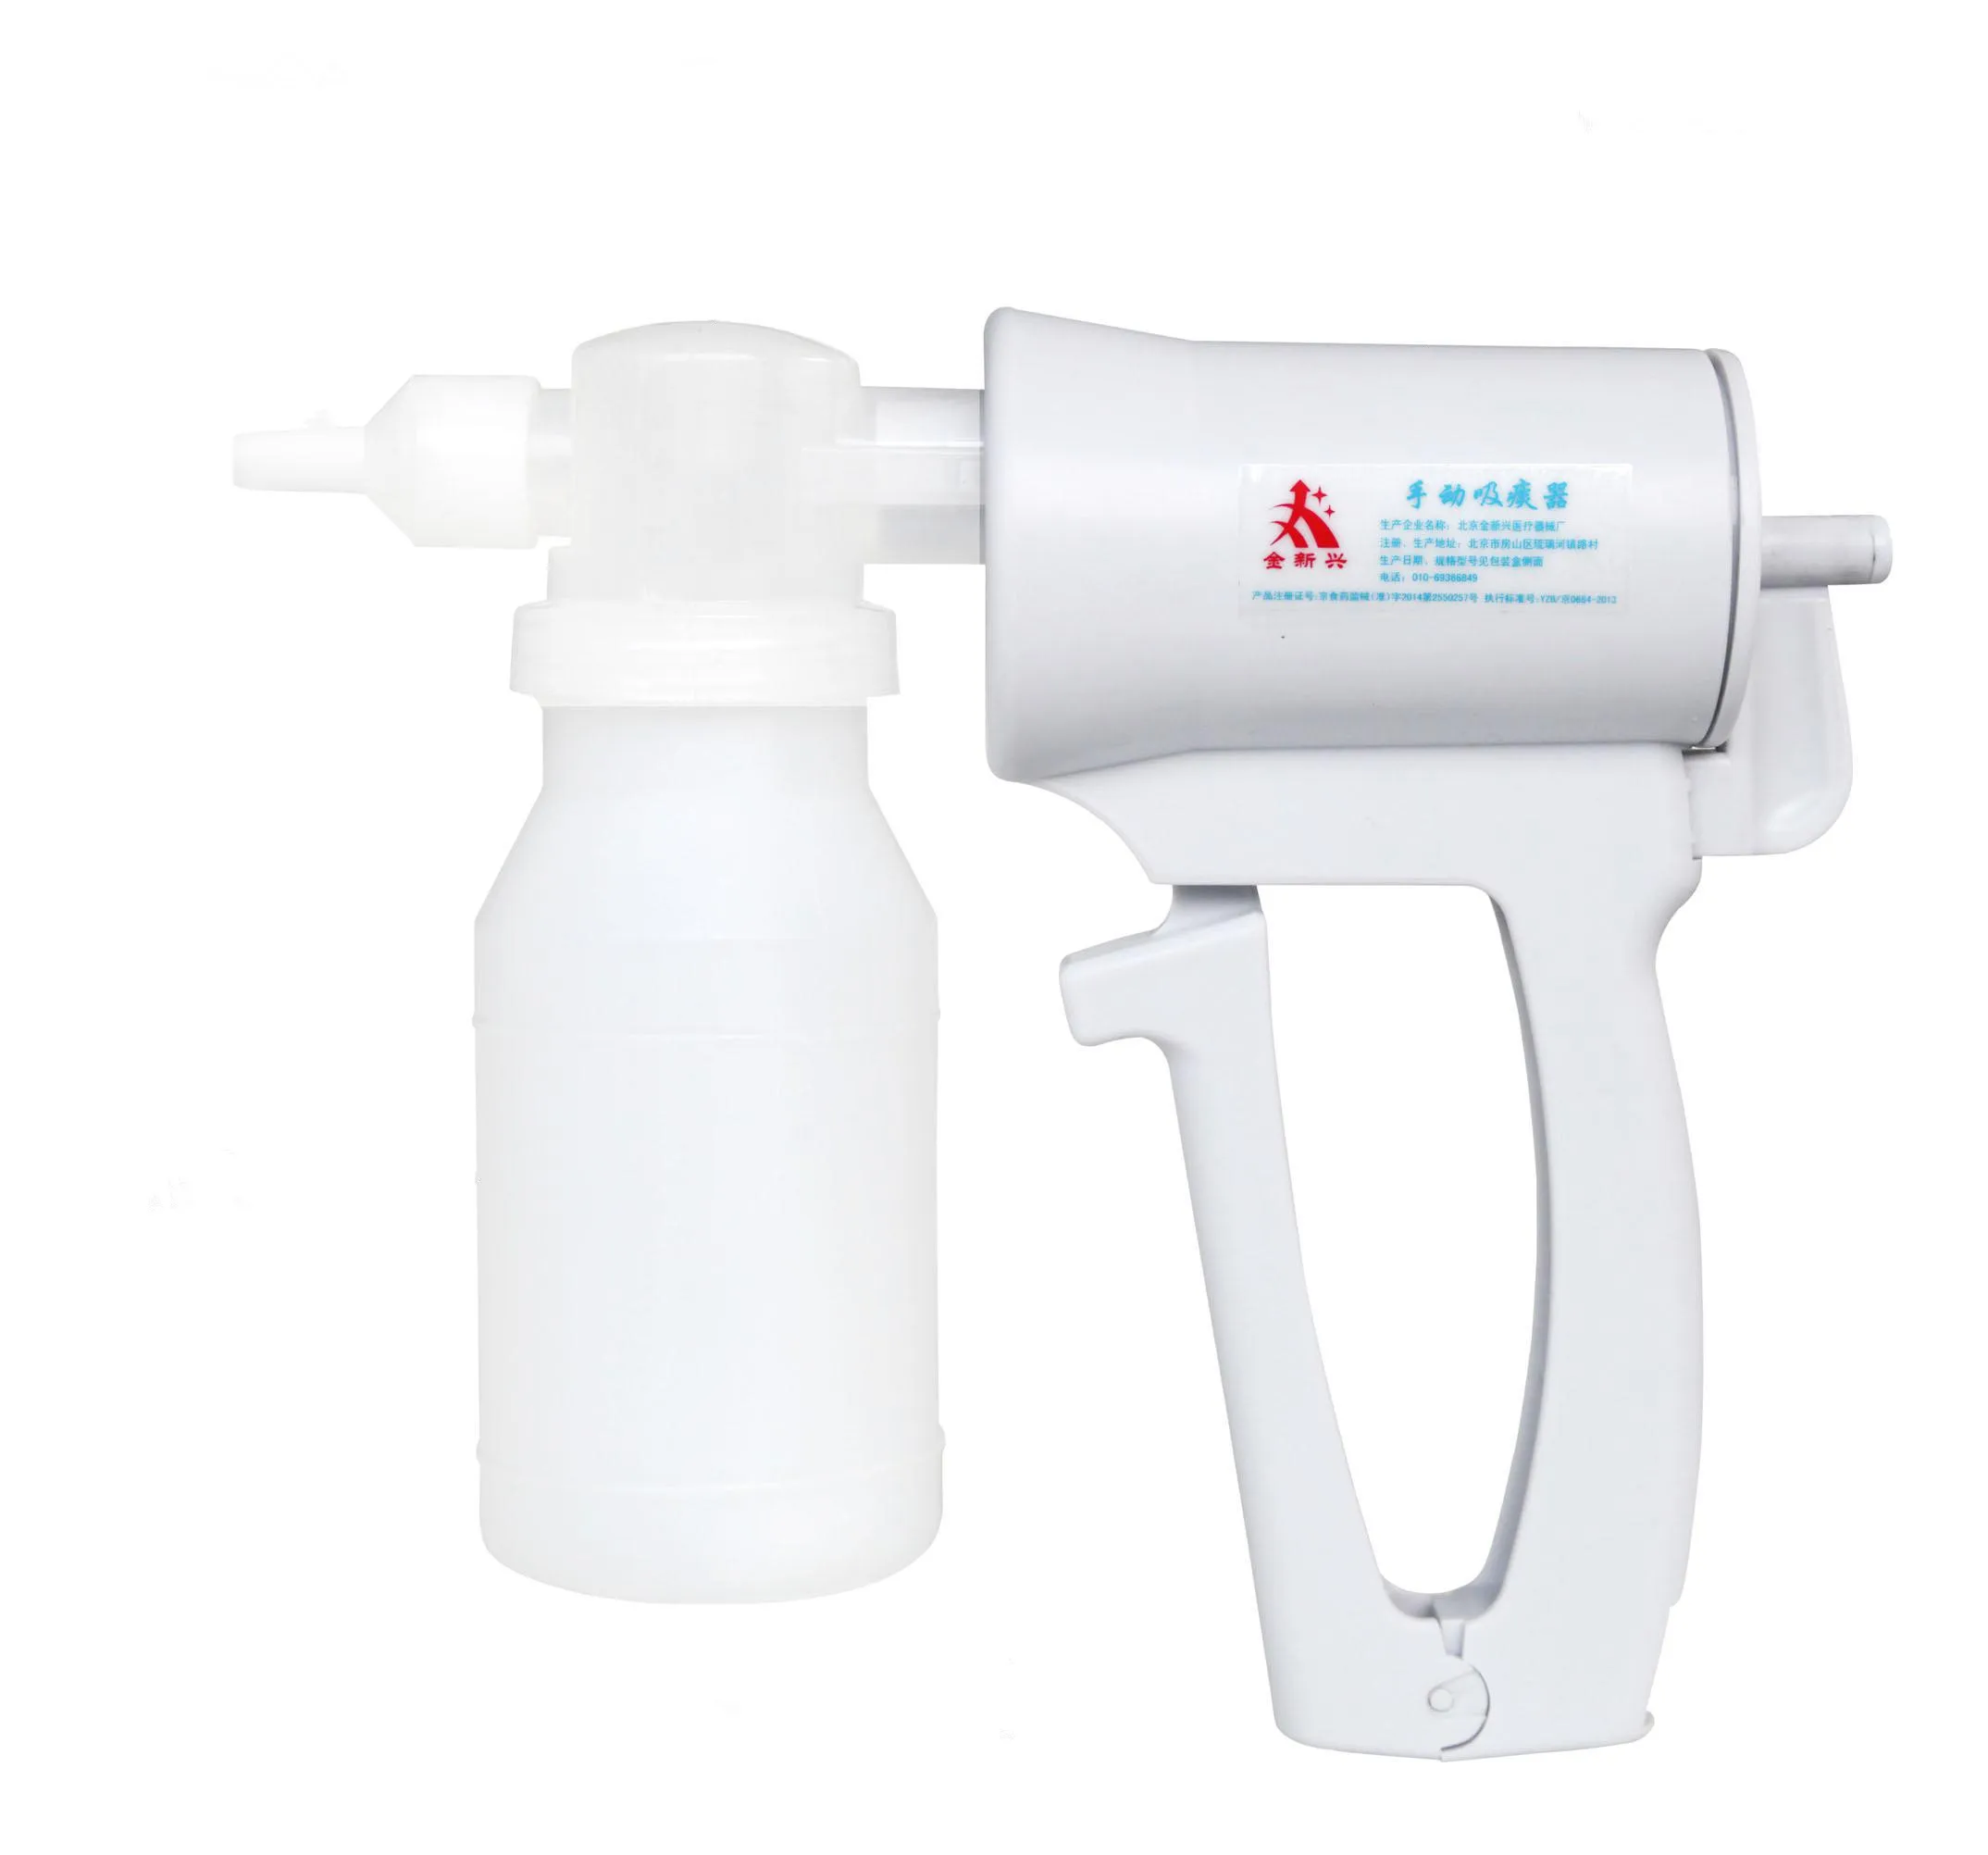 Haute qualité dispositif de premiers secours sauvetage pompe d'aspiration manuelle